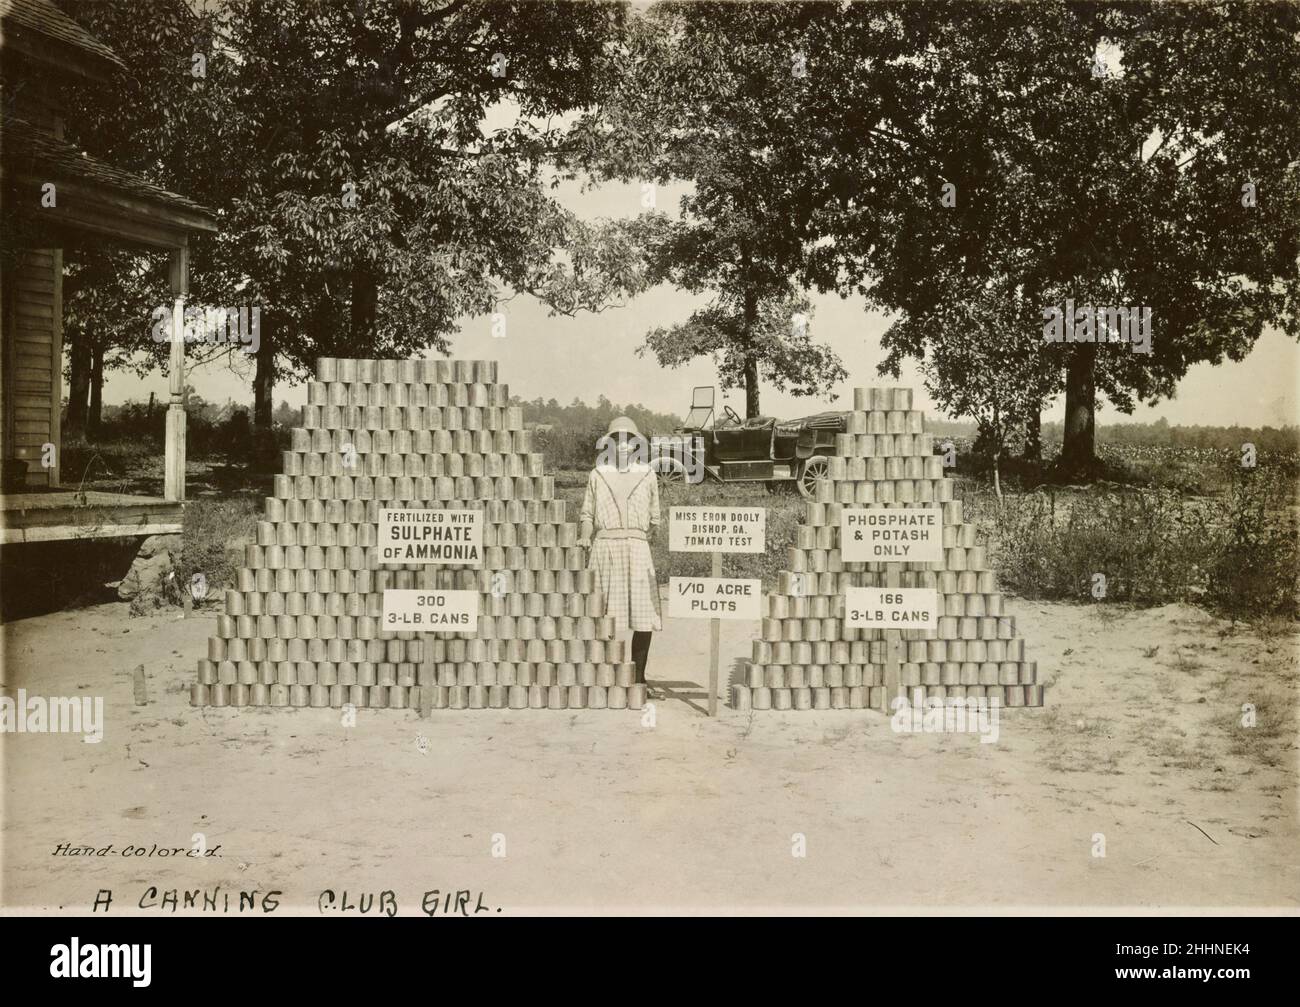 Frau Eron Dooley von Bishop, nahe Athen, Georgia, USA, steht zwischen zwei Stapeln Tomatendosen - frühes Canning Club-Foto - Anfang des 20. Jahrhunderts Stockfoto